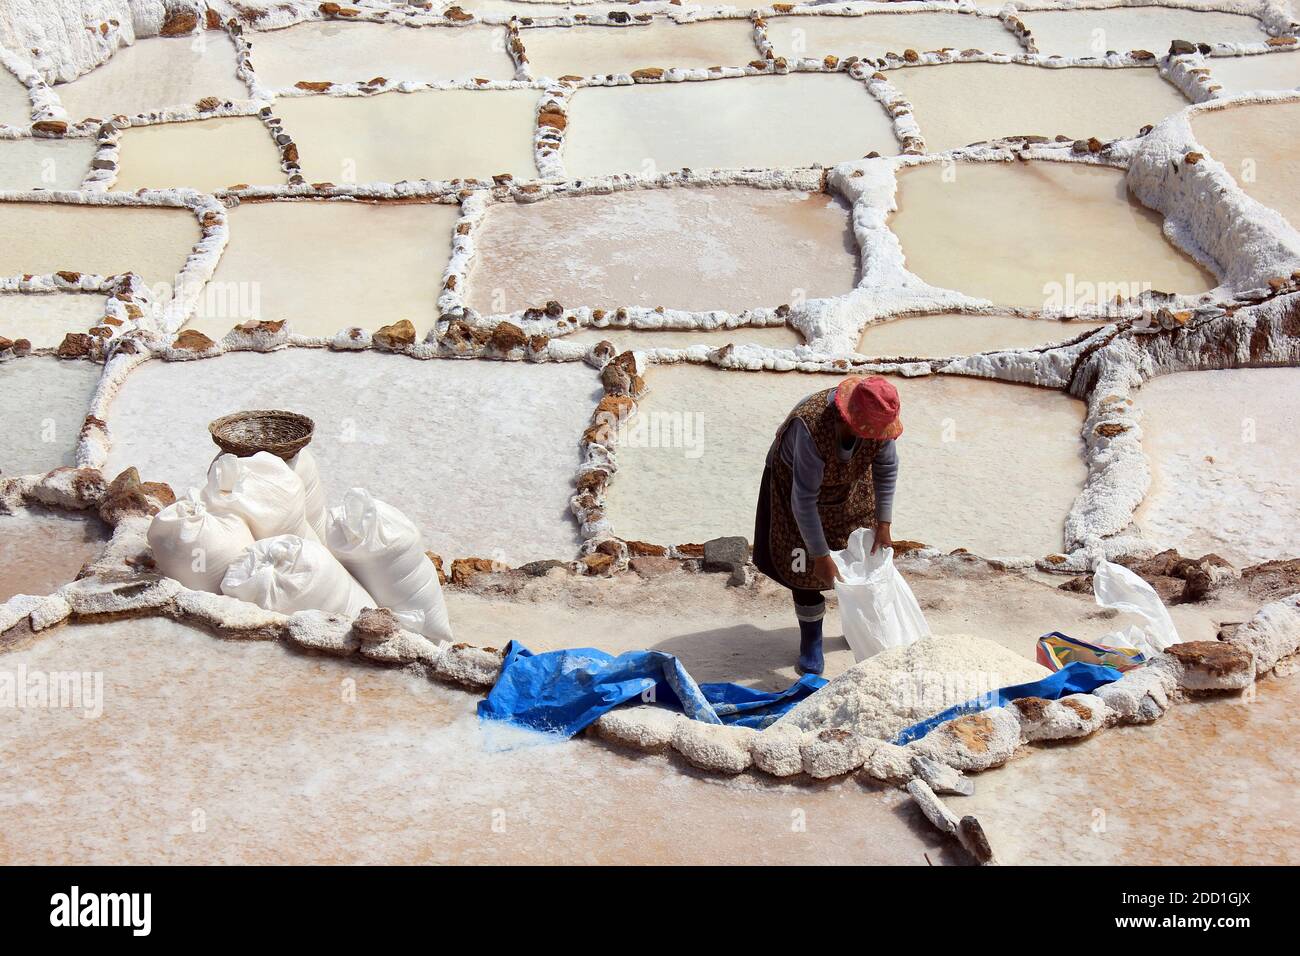 Salinas de Maras les étangs d'évaporation de sel le long des pentes du Qaqawiñay montagne, dans la vallée de l'Urumbamba, région de Cuzco, Pérou Banque D'Images